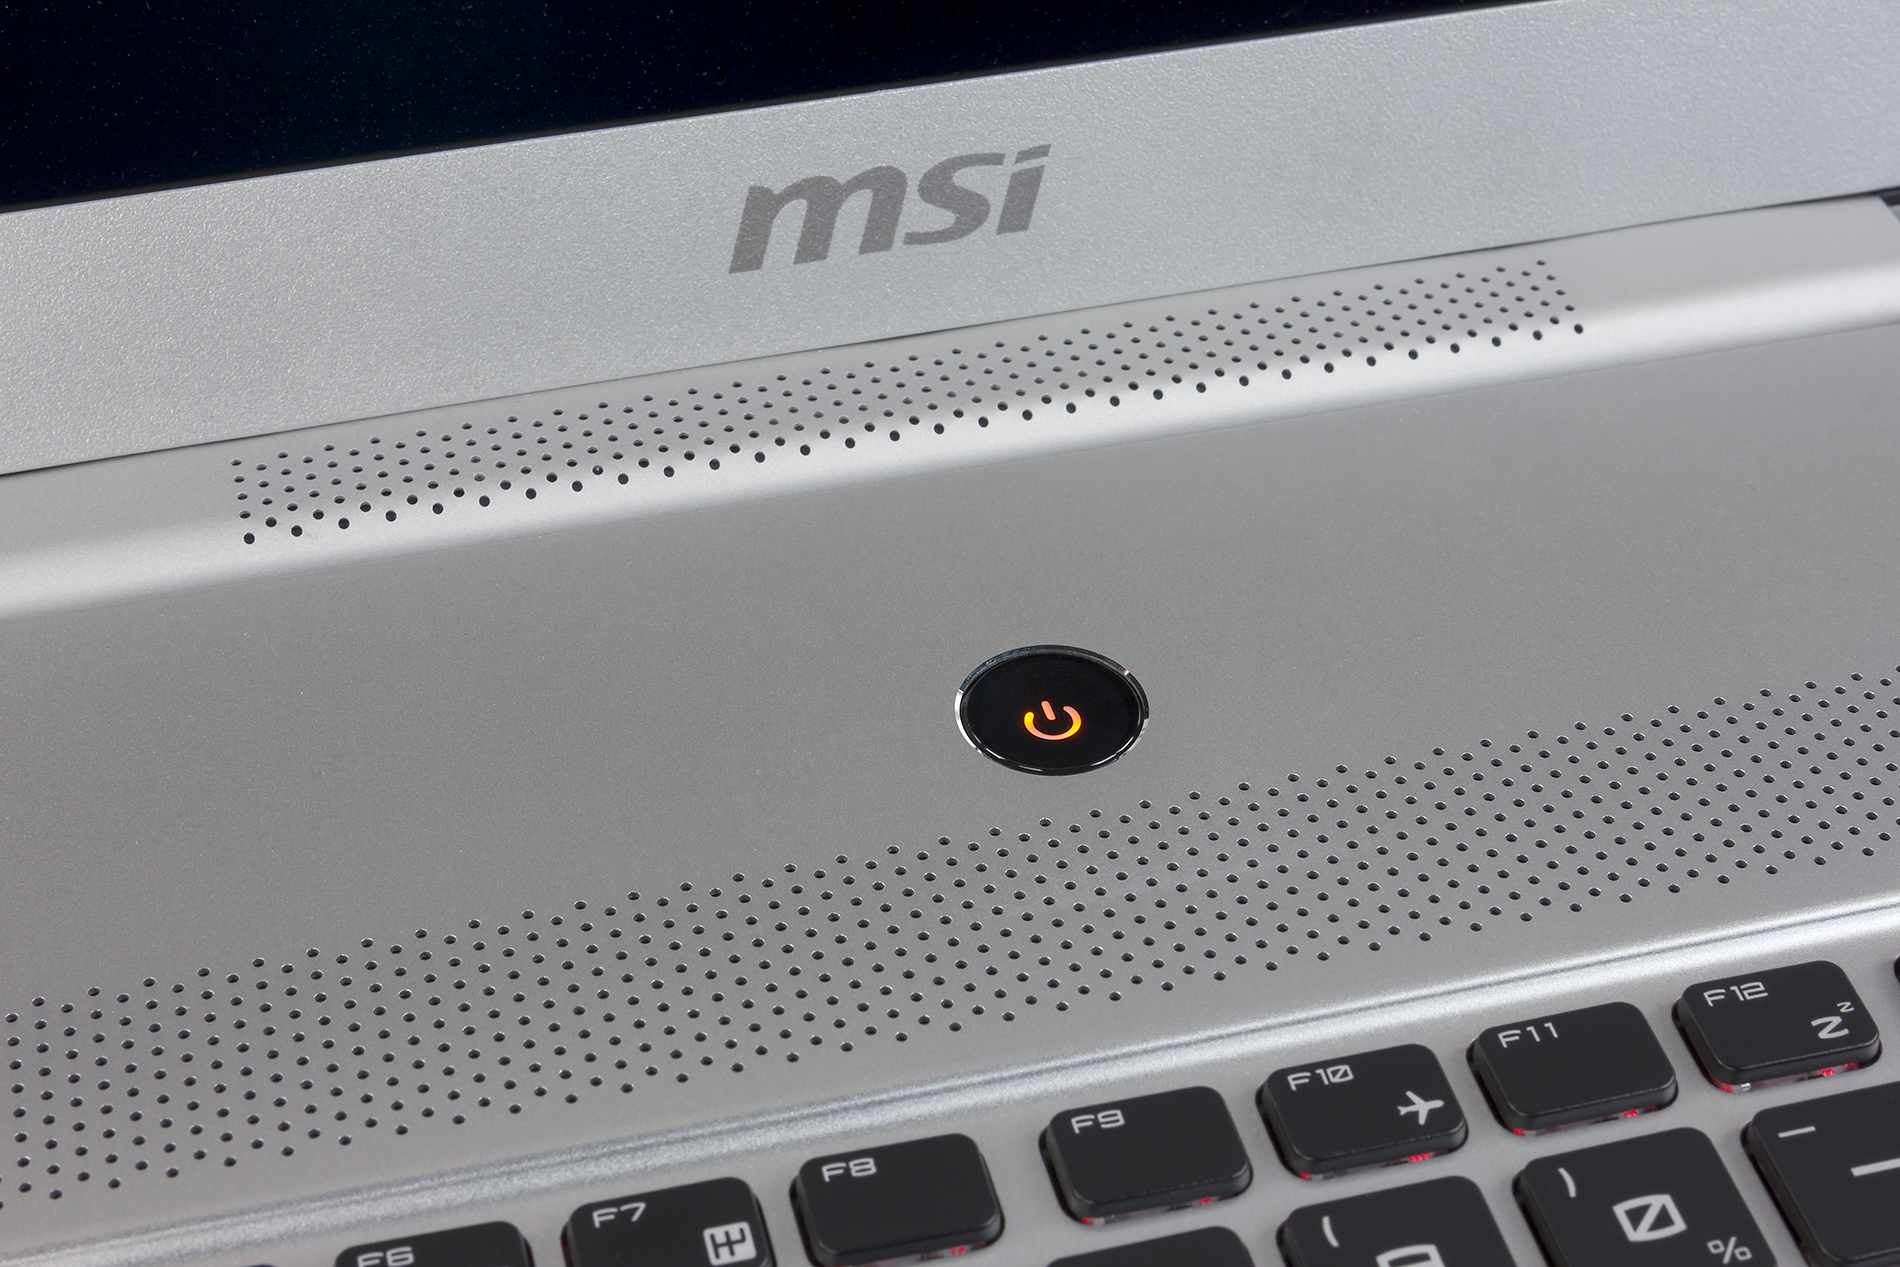 Ноутбук Msi Gs70 2qe Stealth Pro (Gs702qe-093ua)